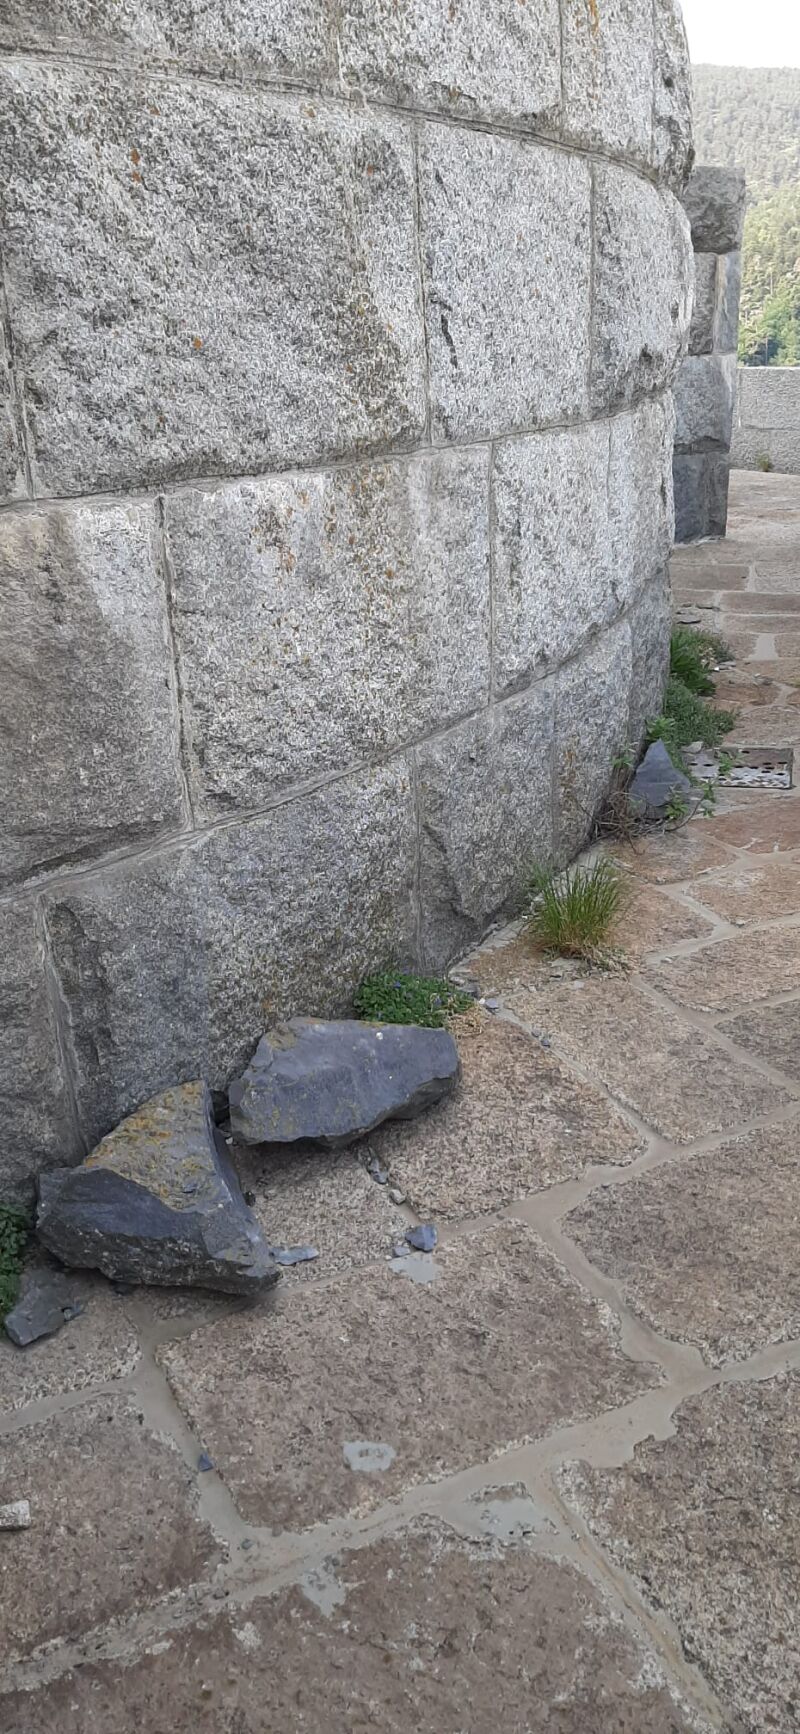 Trozos de piedra desprendidos de las esculturas, en el suelo